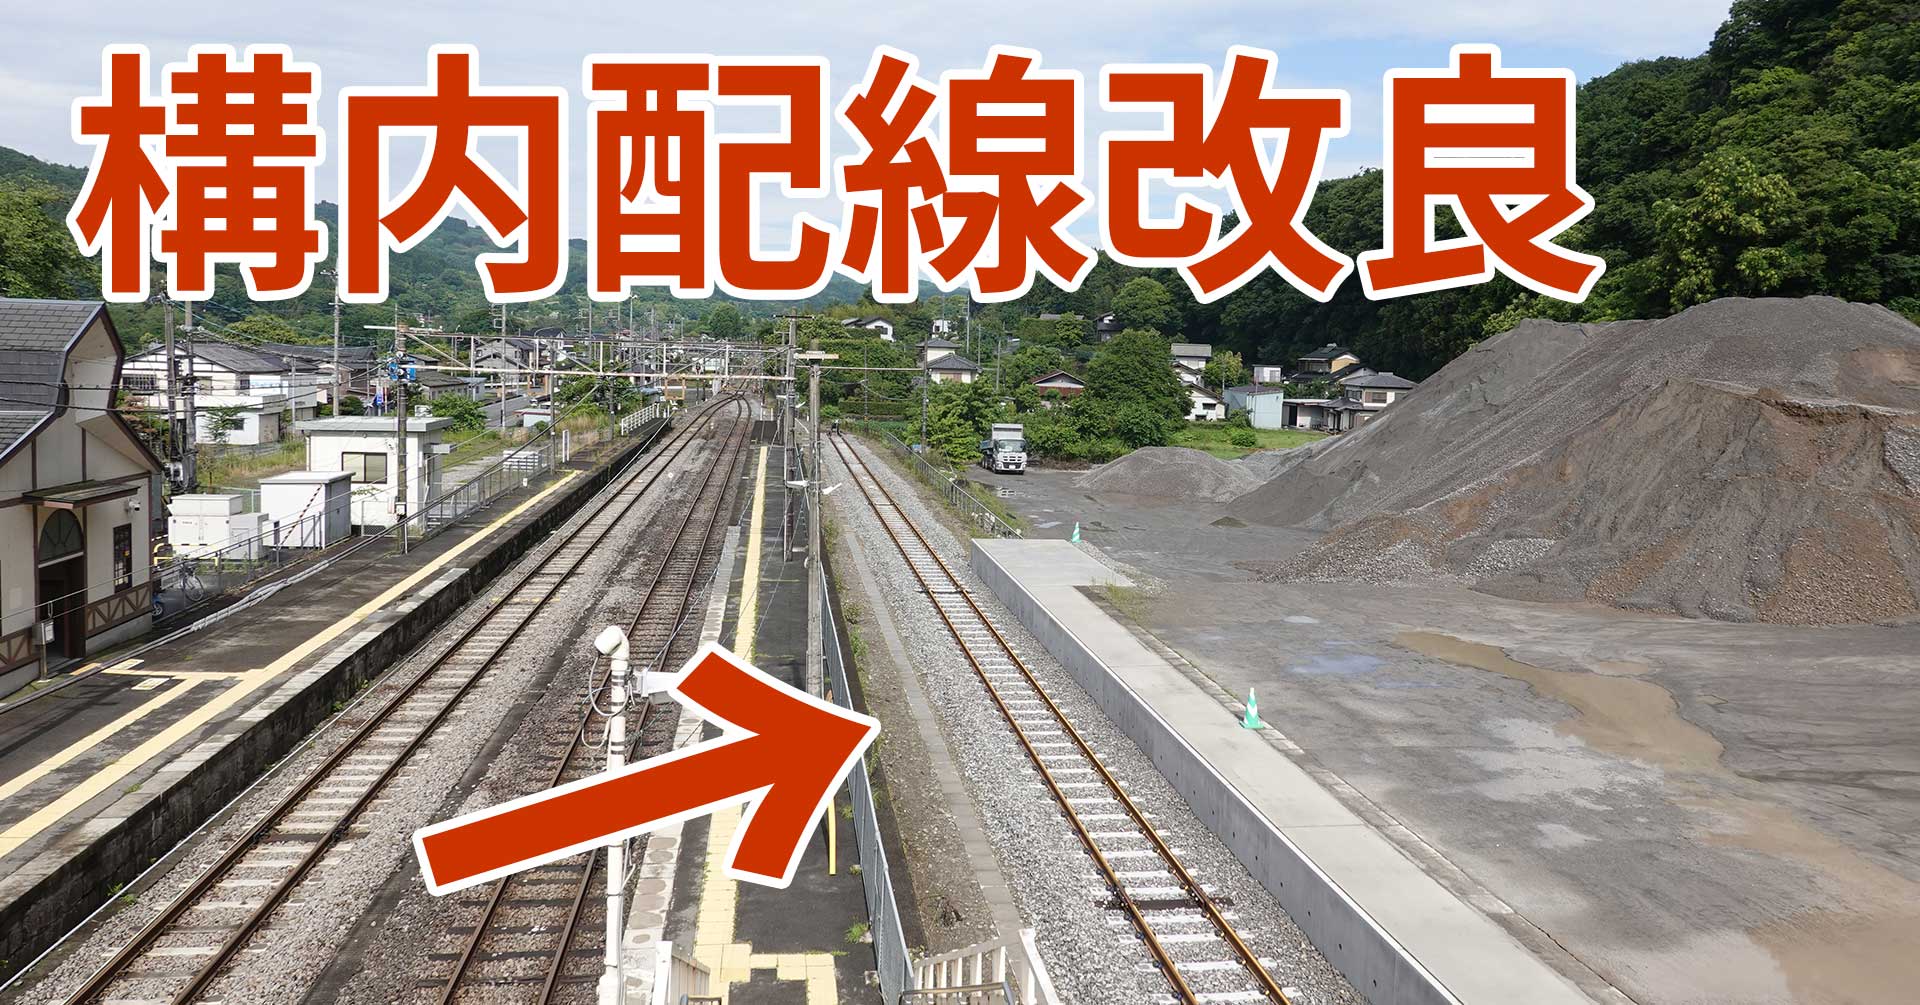 【砕石工臨】吾妻線小野上駅の構内配線改良